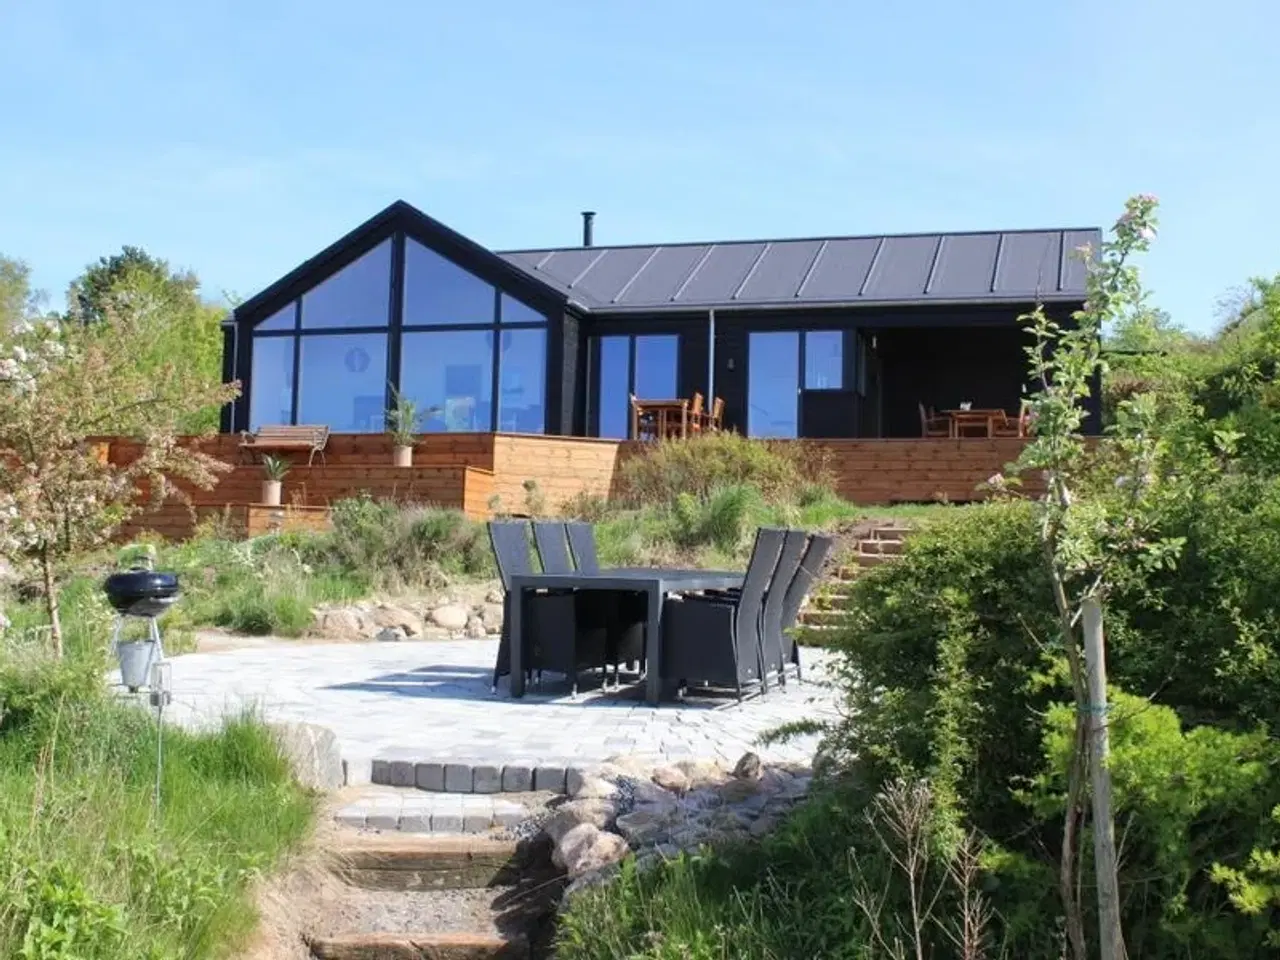 Billede 1 - Nyt, dejligt feriehus for 8 personer udlejes i Veddinge bakker - et af Danmarks smukkeste områder